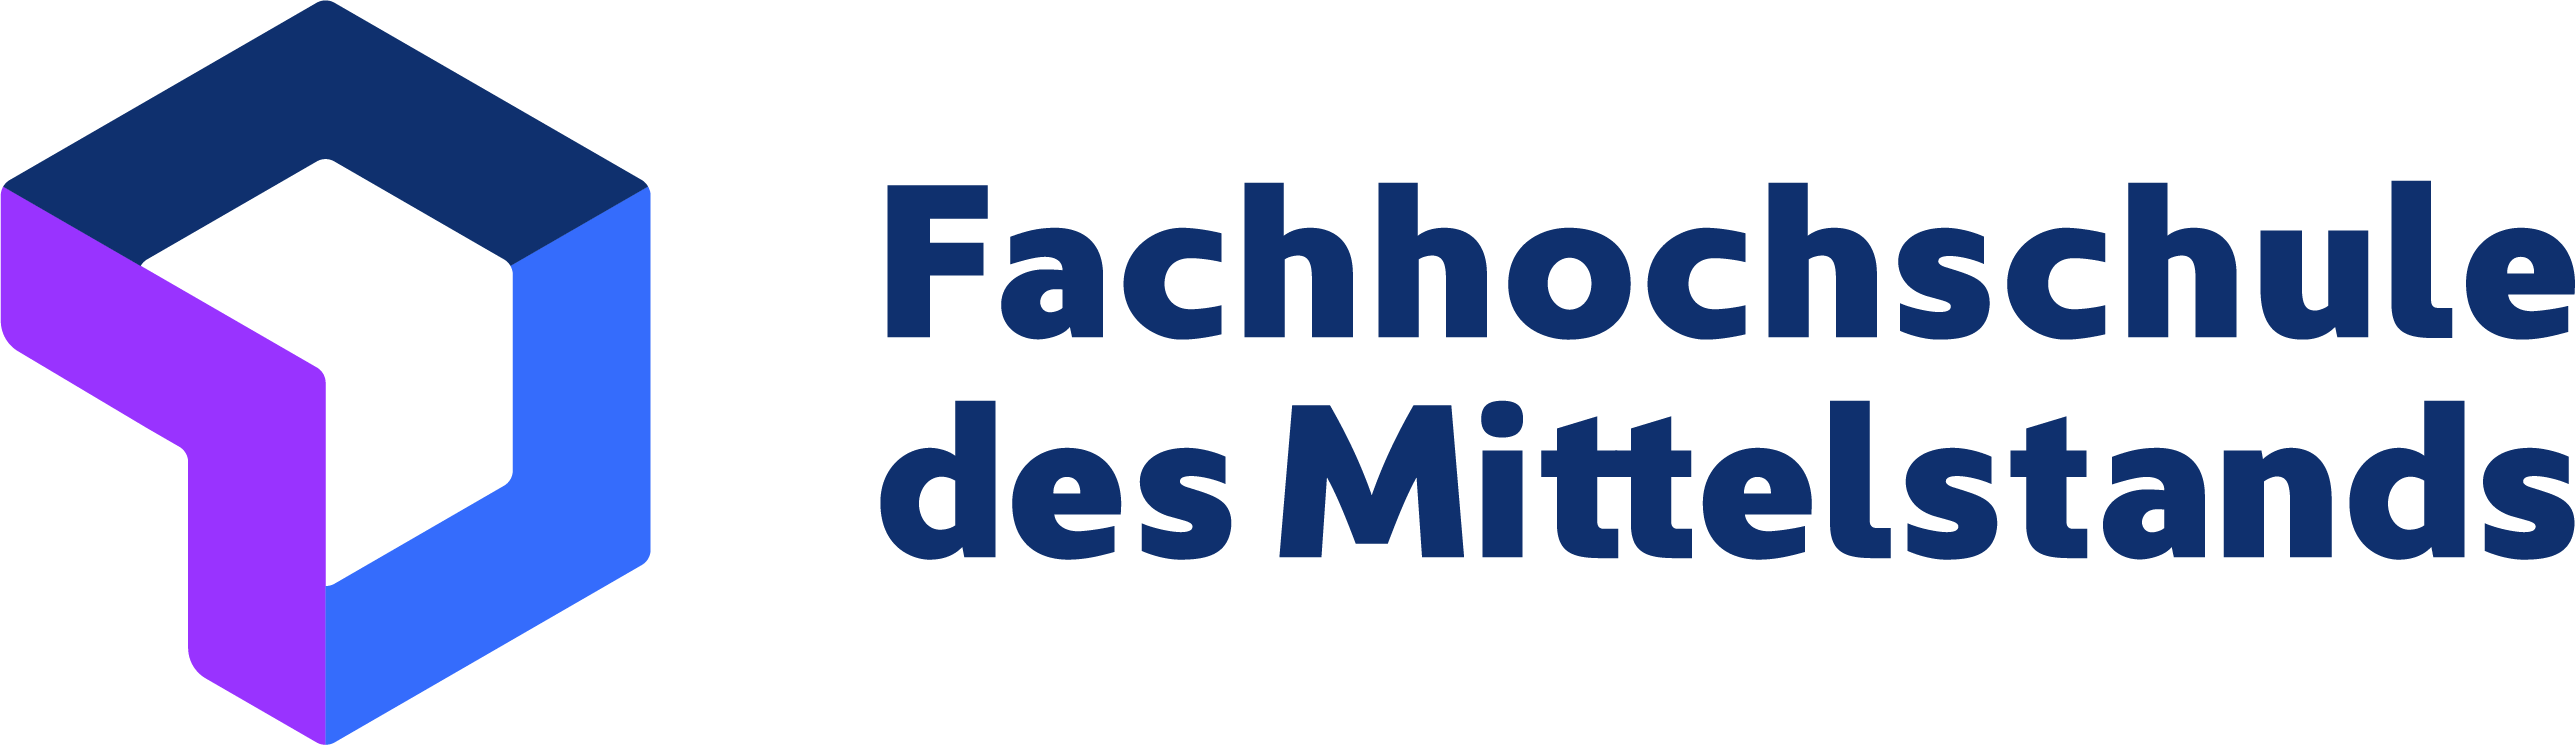 Logo Fachhochschule des Mittelstands (FHM)